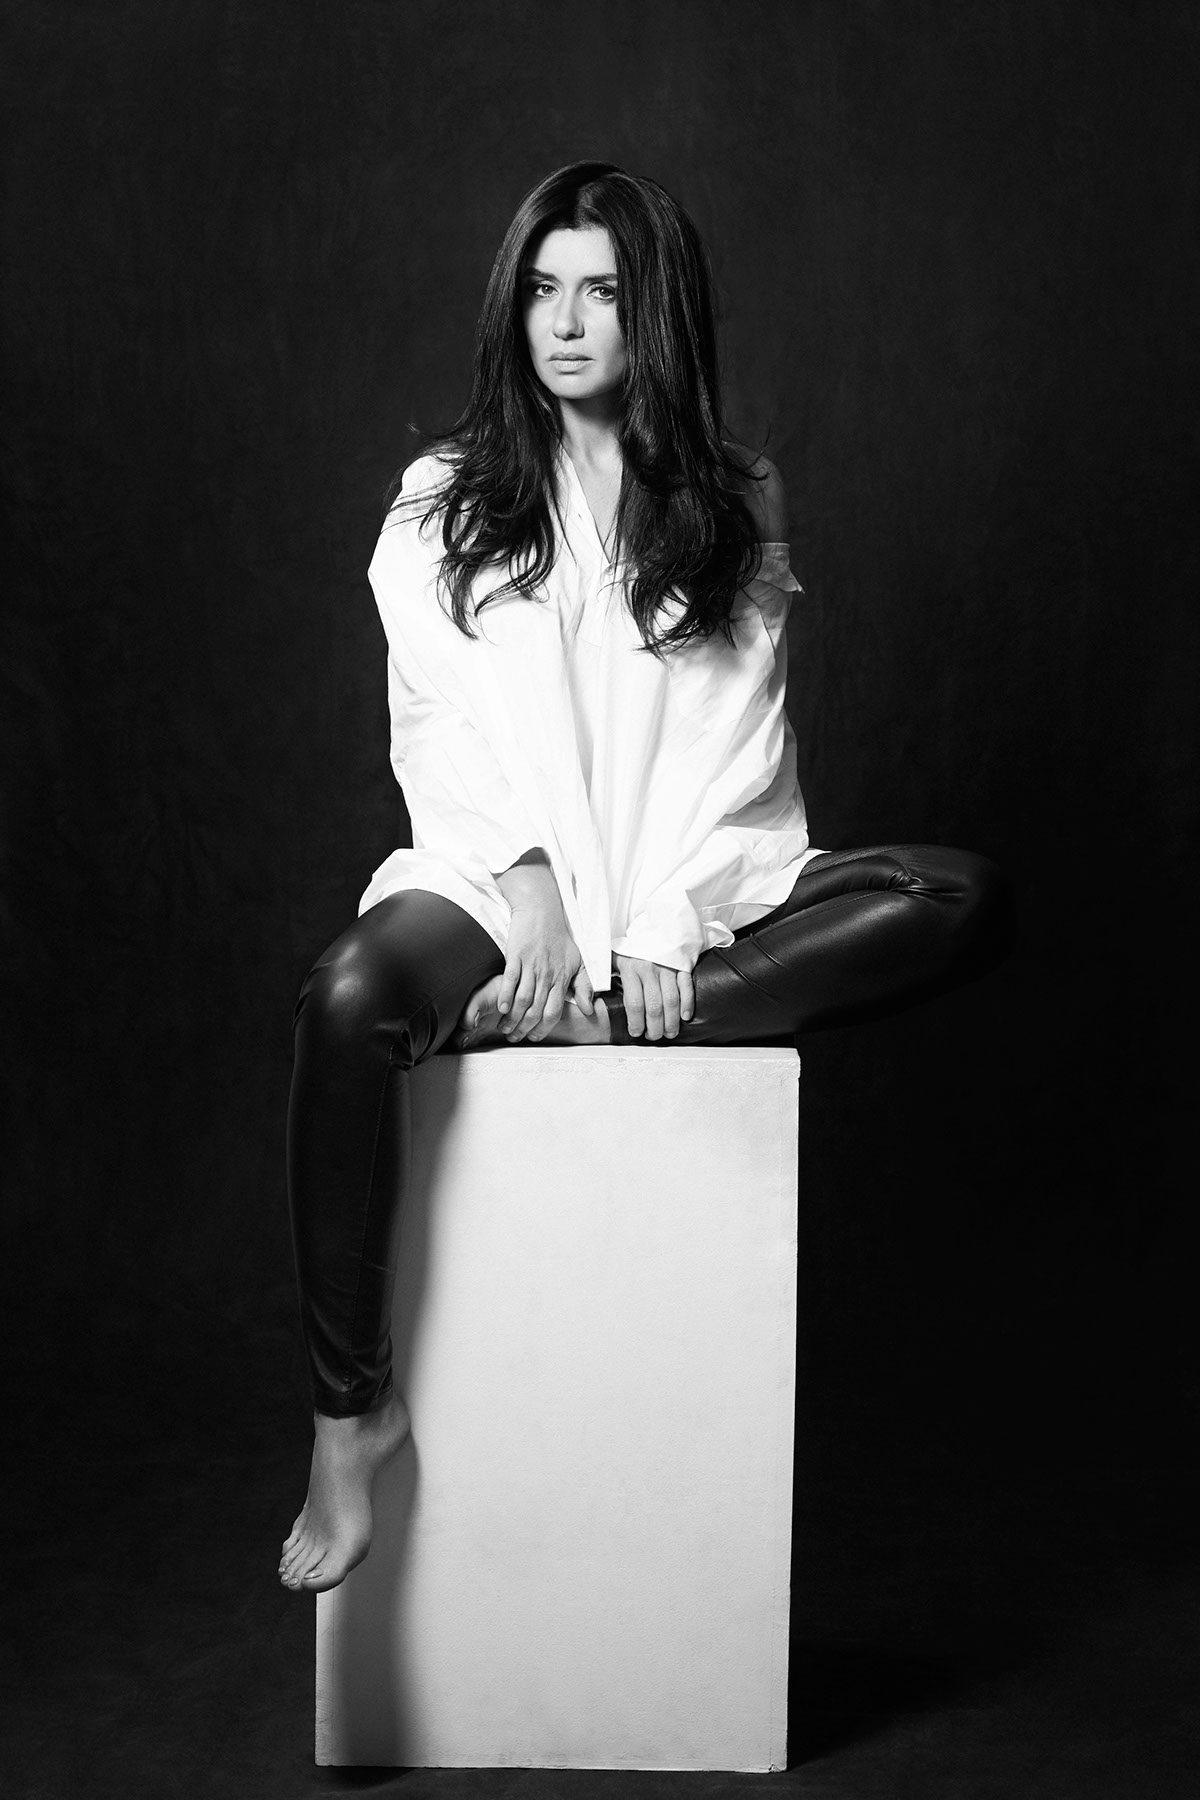 actress Celebrity egyptian_actress egypt portrait studio lighting blackandwhite black_and_white